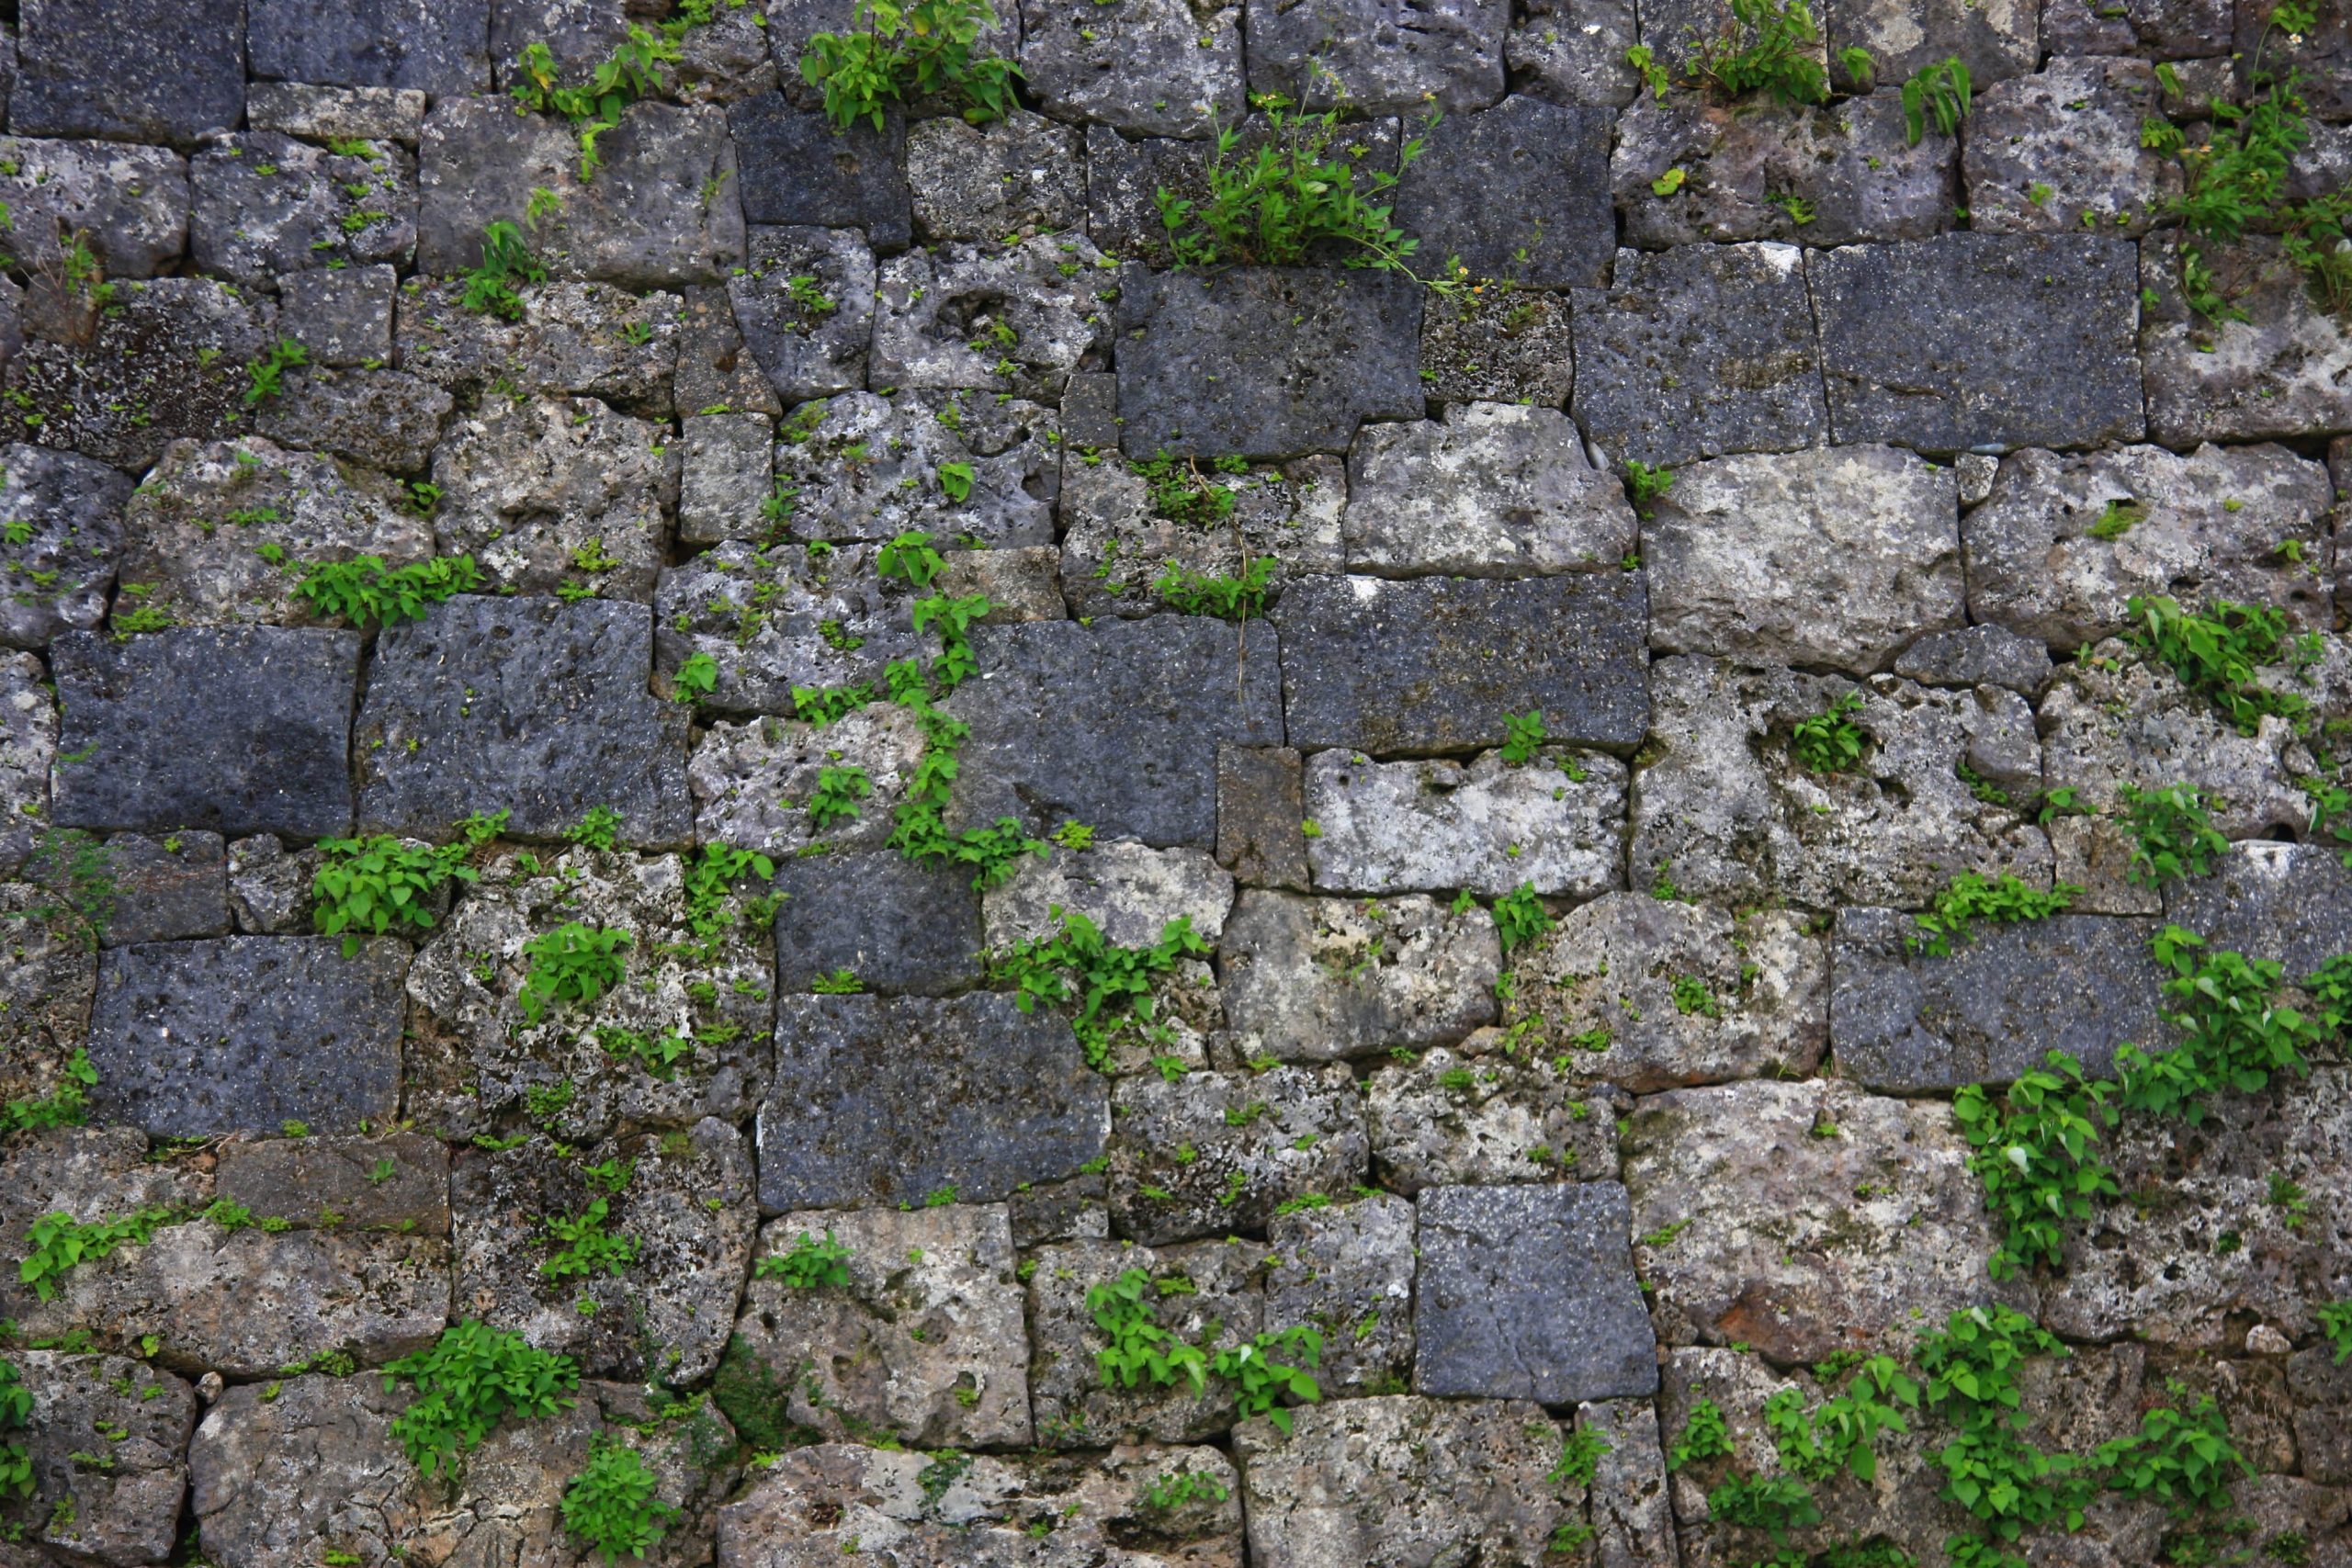 <p class="p1">琉球・中城城一の郭西面アーチ門袖の城壁。<br />
緻密な切石積みの配色センスと、石灰岩（白い方の石）に息吹く緑が、柔らかさを表現する。<br />
<span class="s1">[</span>撮影：<span class="s1">2019.08.14</span>、沖縄県中頭郡北中城村<span class="s1">]</span></p>